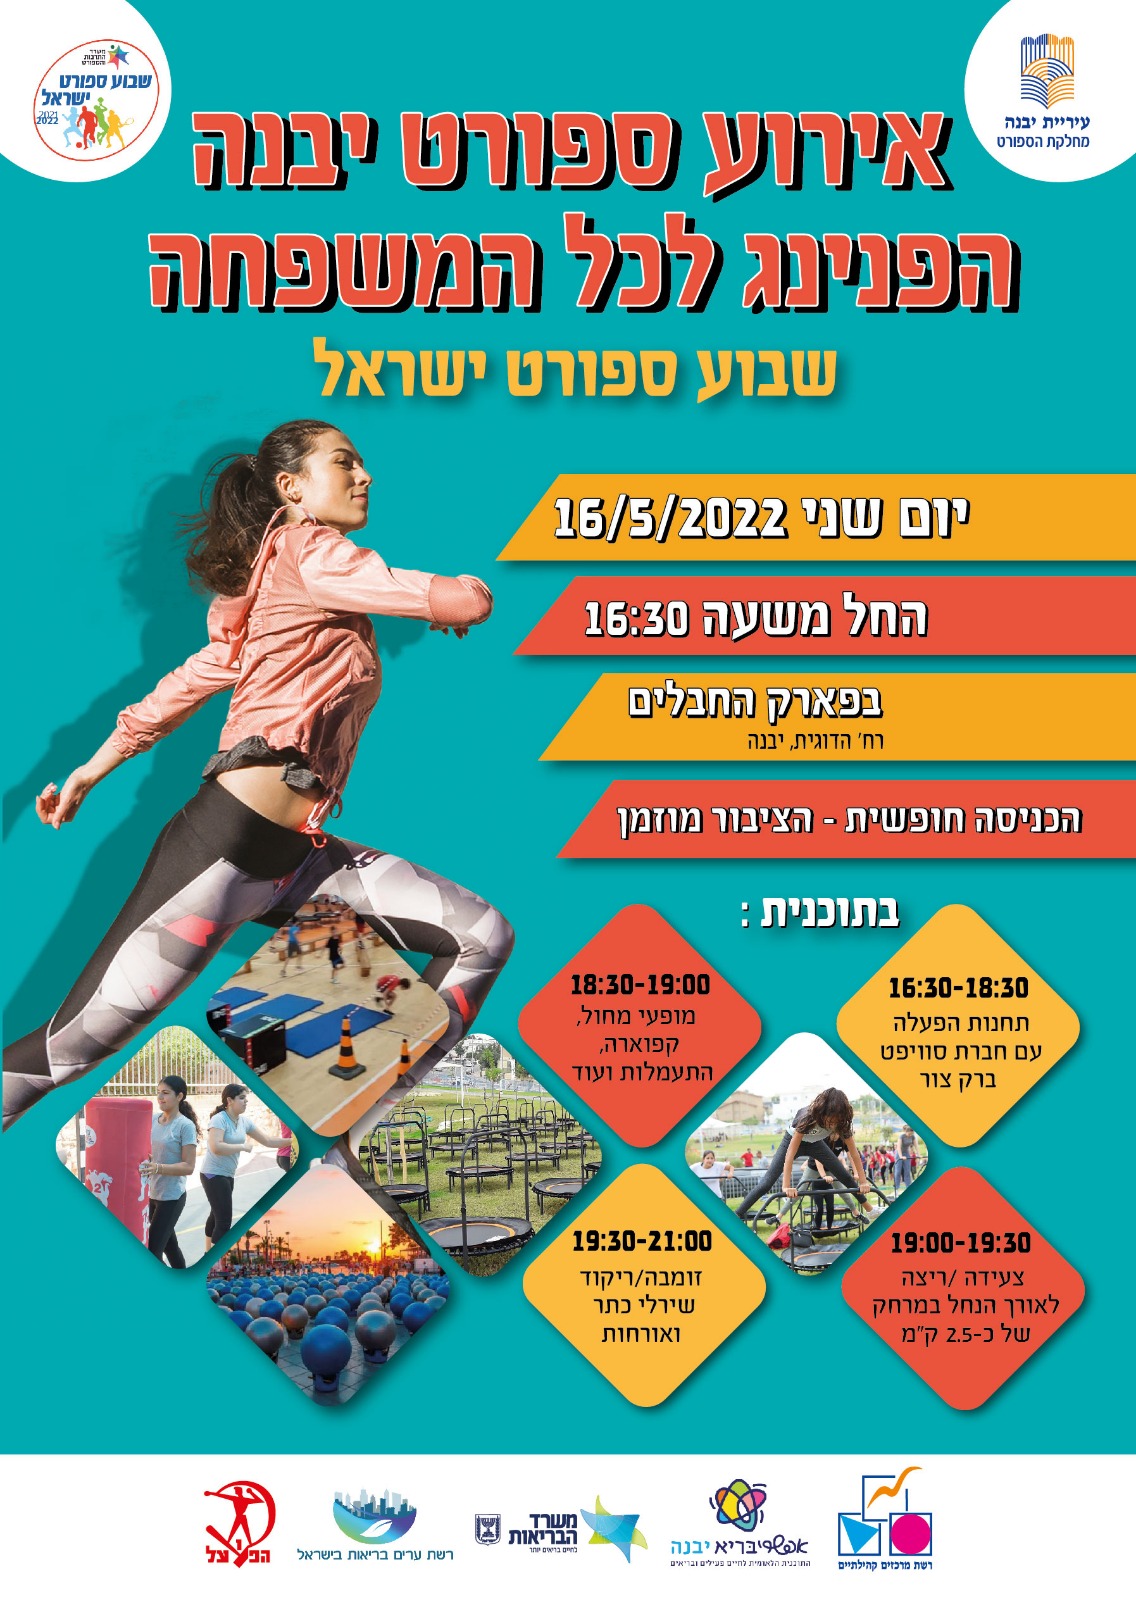 אירוע ספורט יבנה לכל המשפחה במסגרת שבוע ספורט ישראל